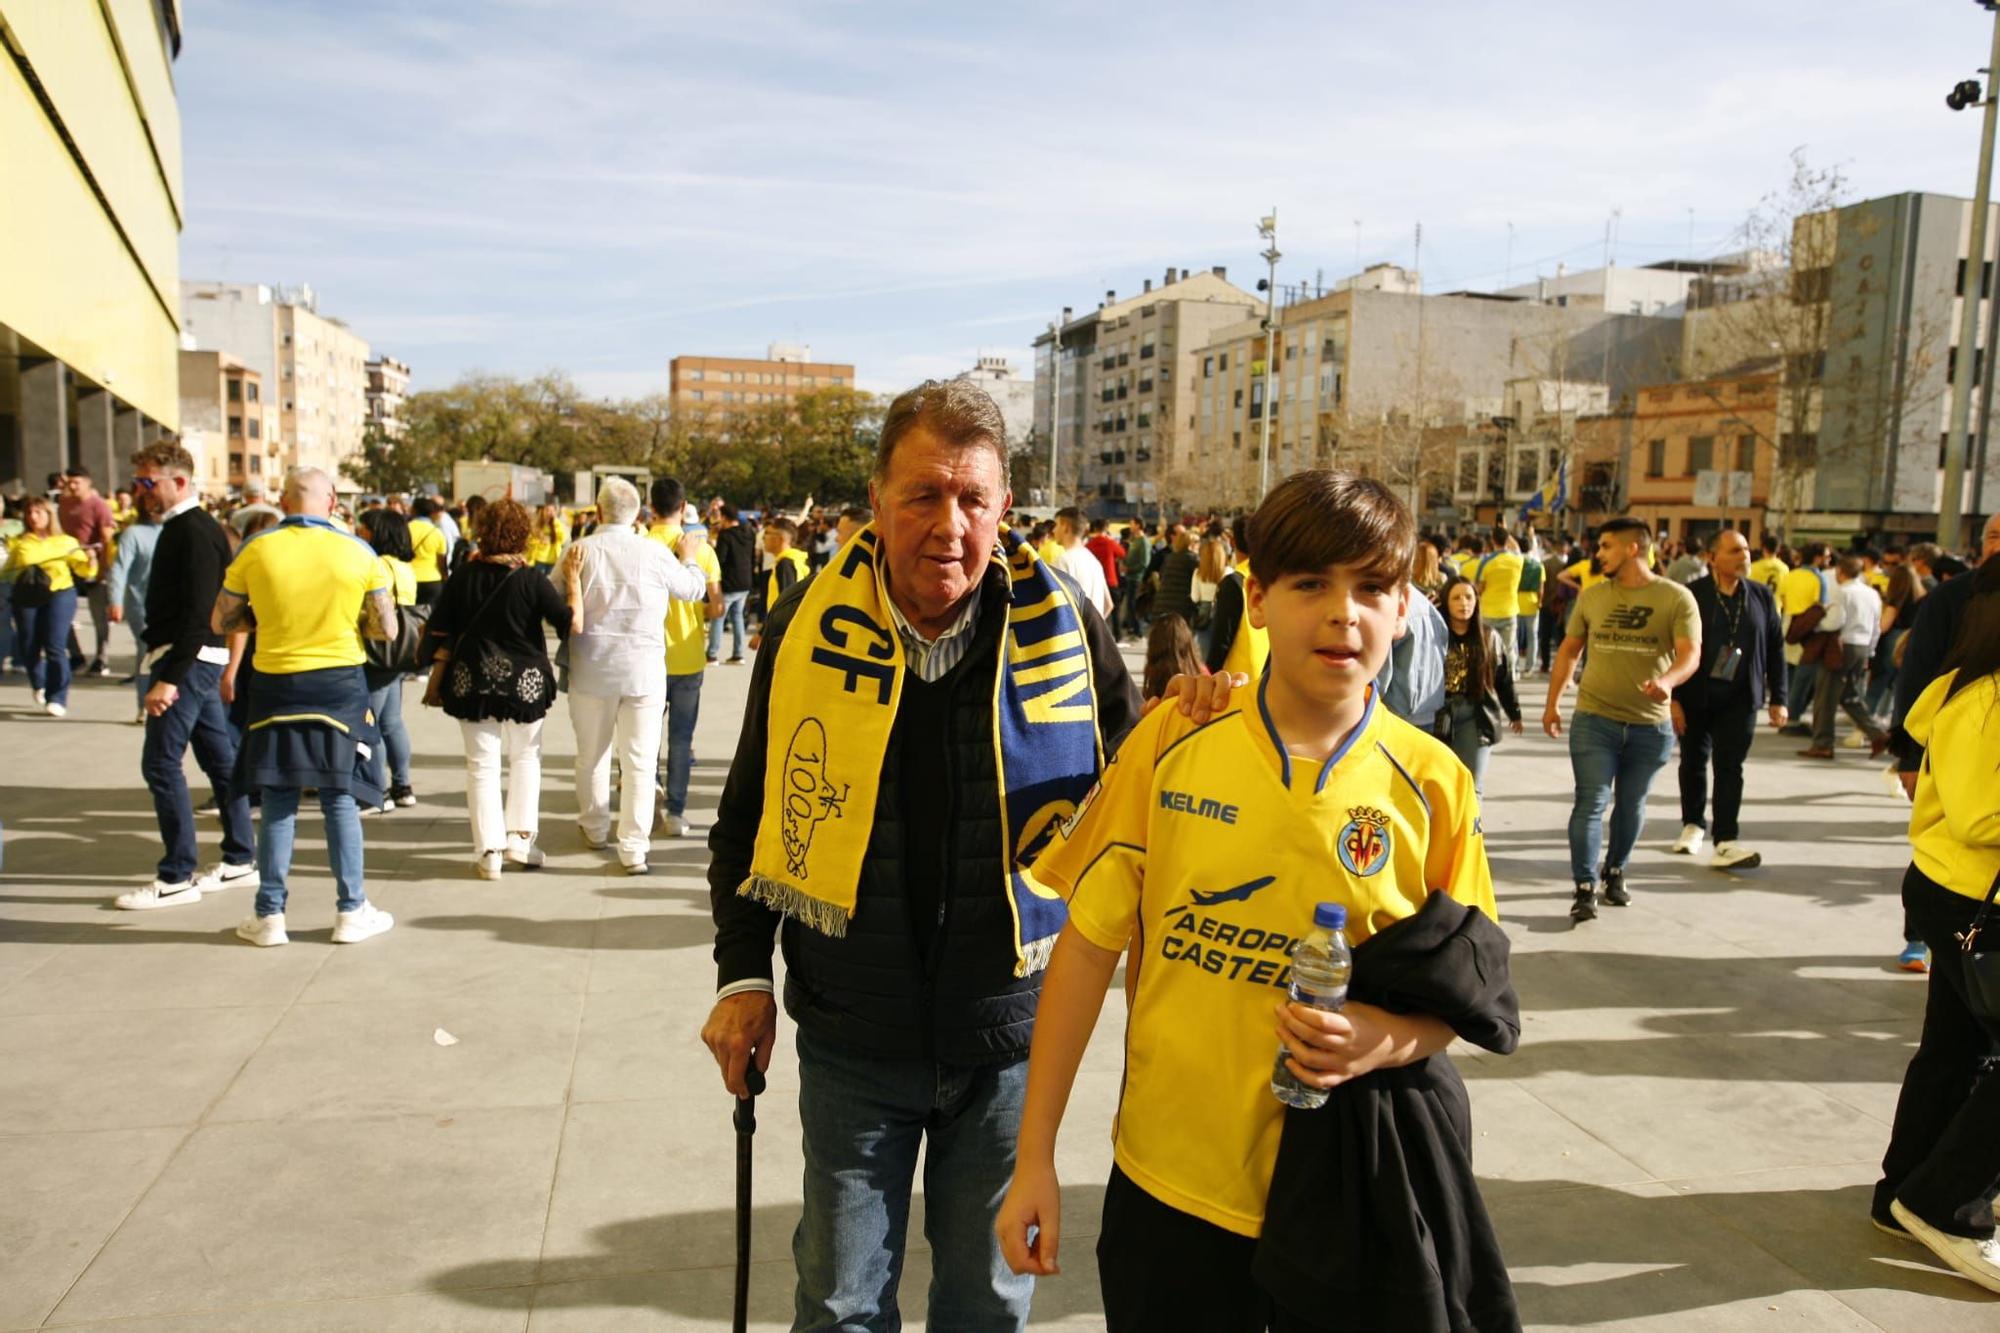 Ambiente previo al partido de leyendas del Villarreal CF en imágenes